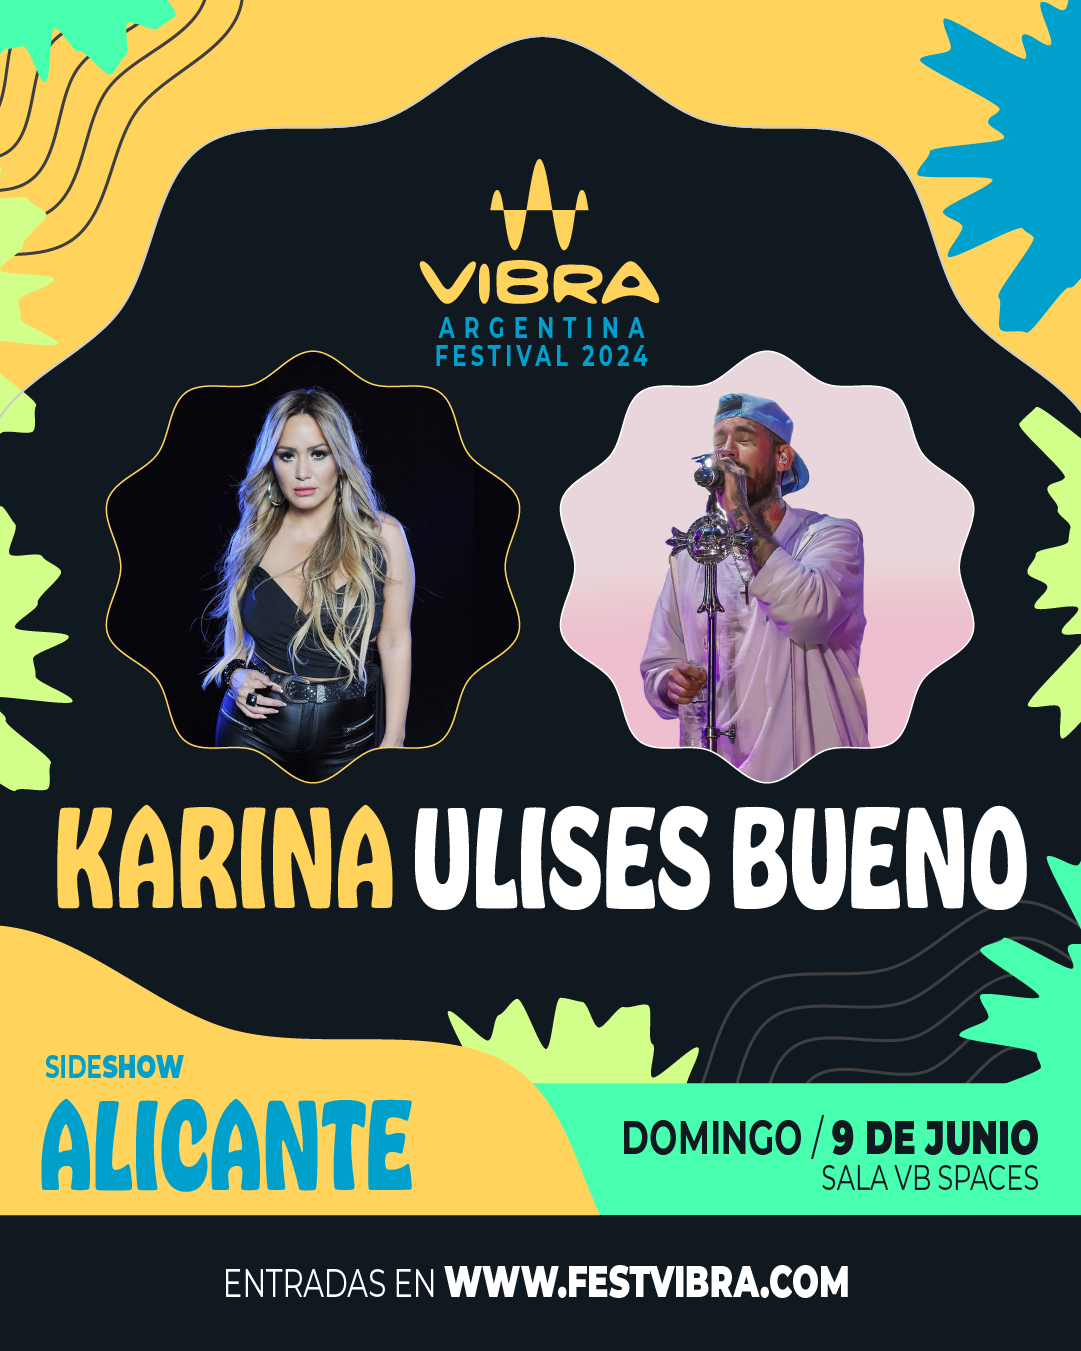 VIBRA ARGENTINA FESTIVAL 2024 en ALICANTE, sala VB Space, Domingo 9 Junio Karina y Ulises Bueno. Entradas y Info: www.festvibra.com